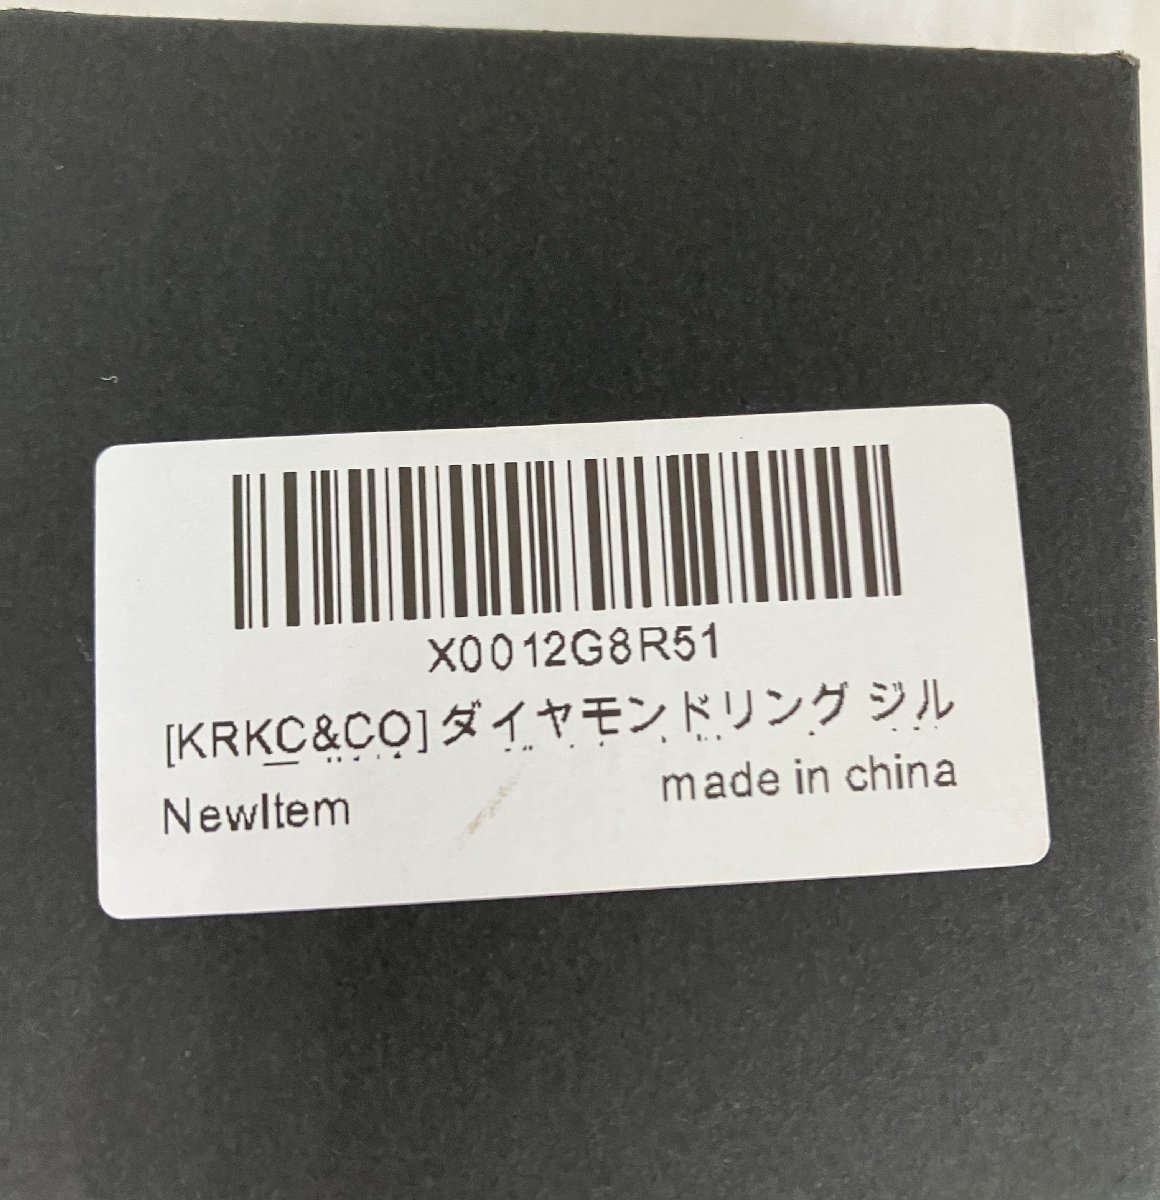 ☆KRKC&CO ダイヤモンド 指輪 ◆高級感抜群5,991円